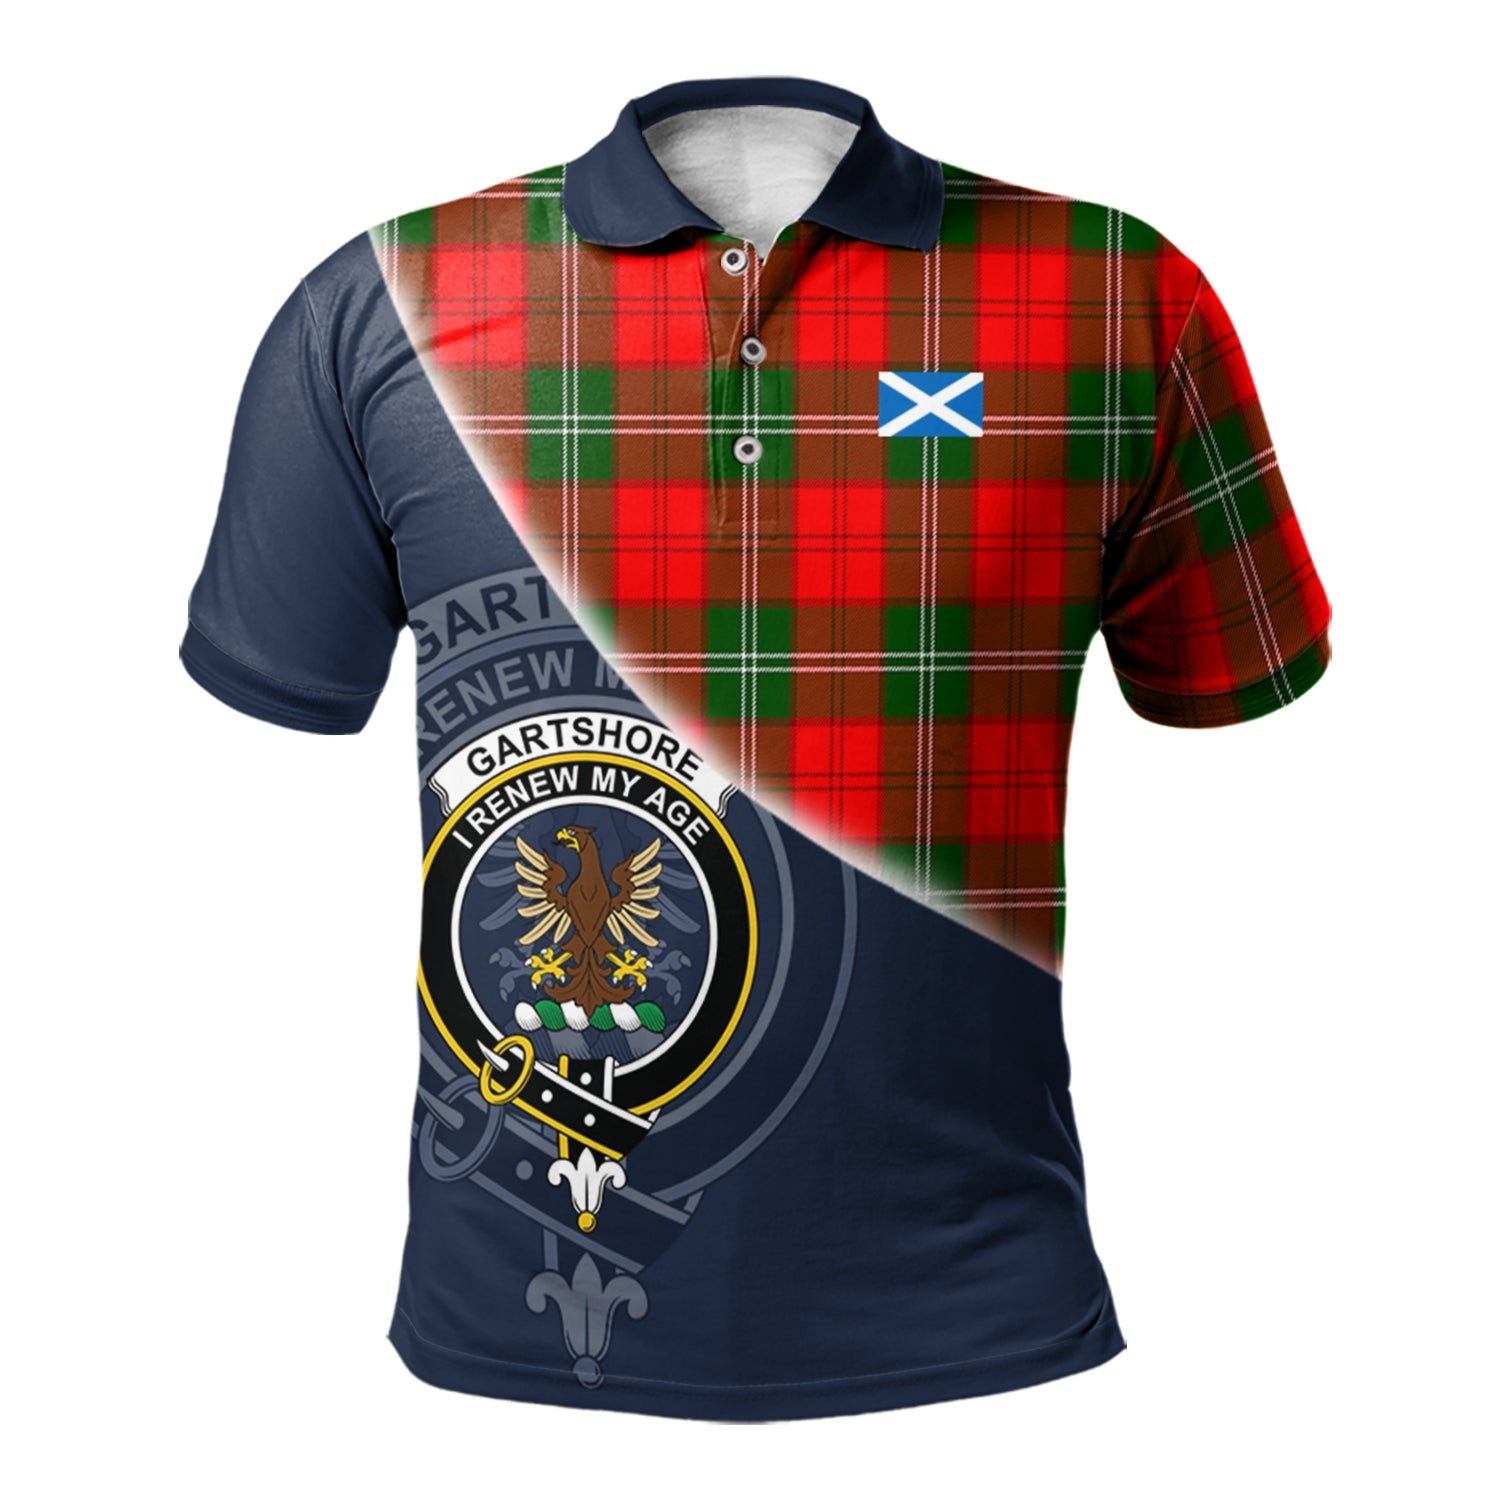 scottish-gartshore-clan-crest-tartan-scotland-flag-half-style-polo-shirt